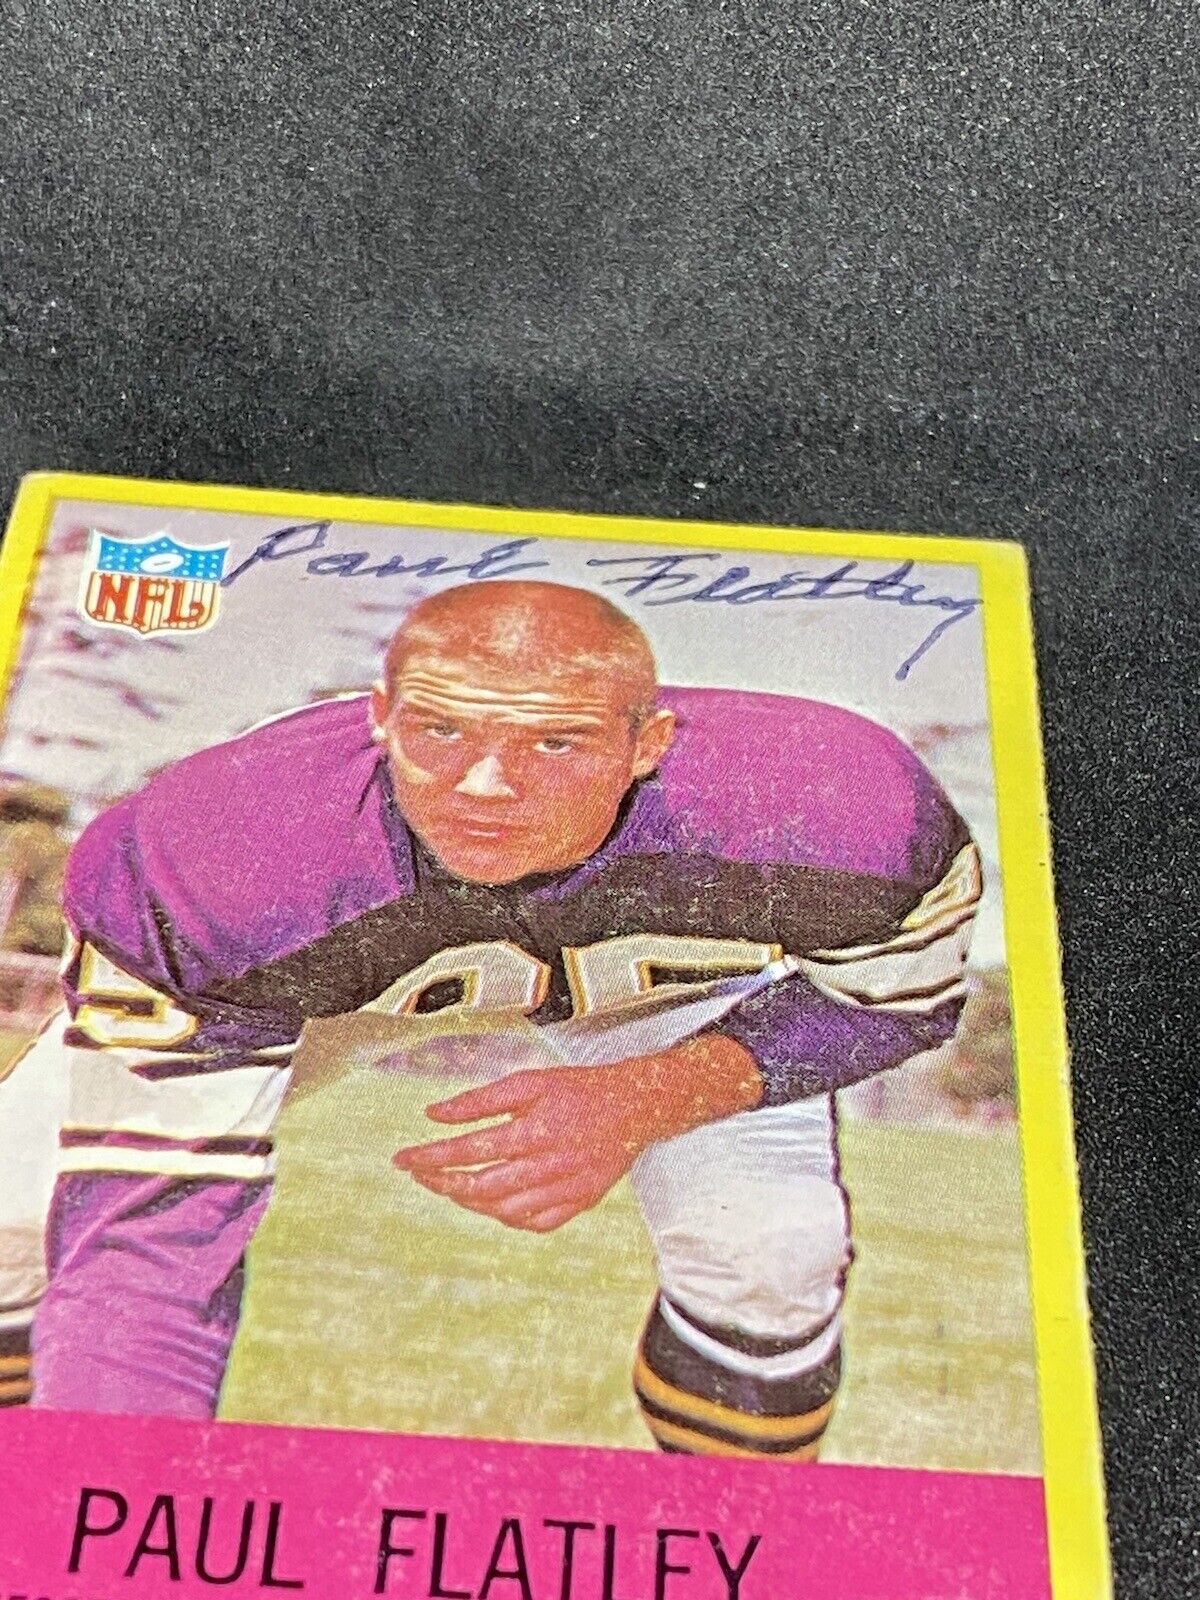 Paul Flatley 1967 Philadelphia #101 Minnesota Vikings Autographed Signed Card